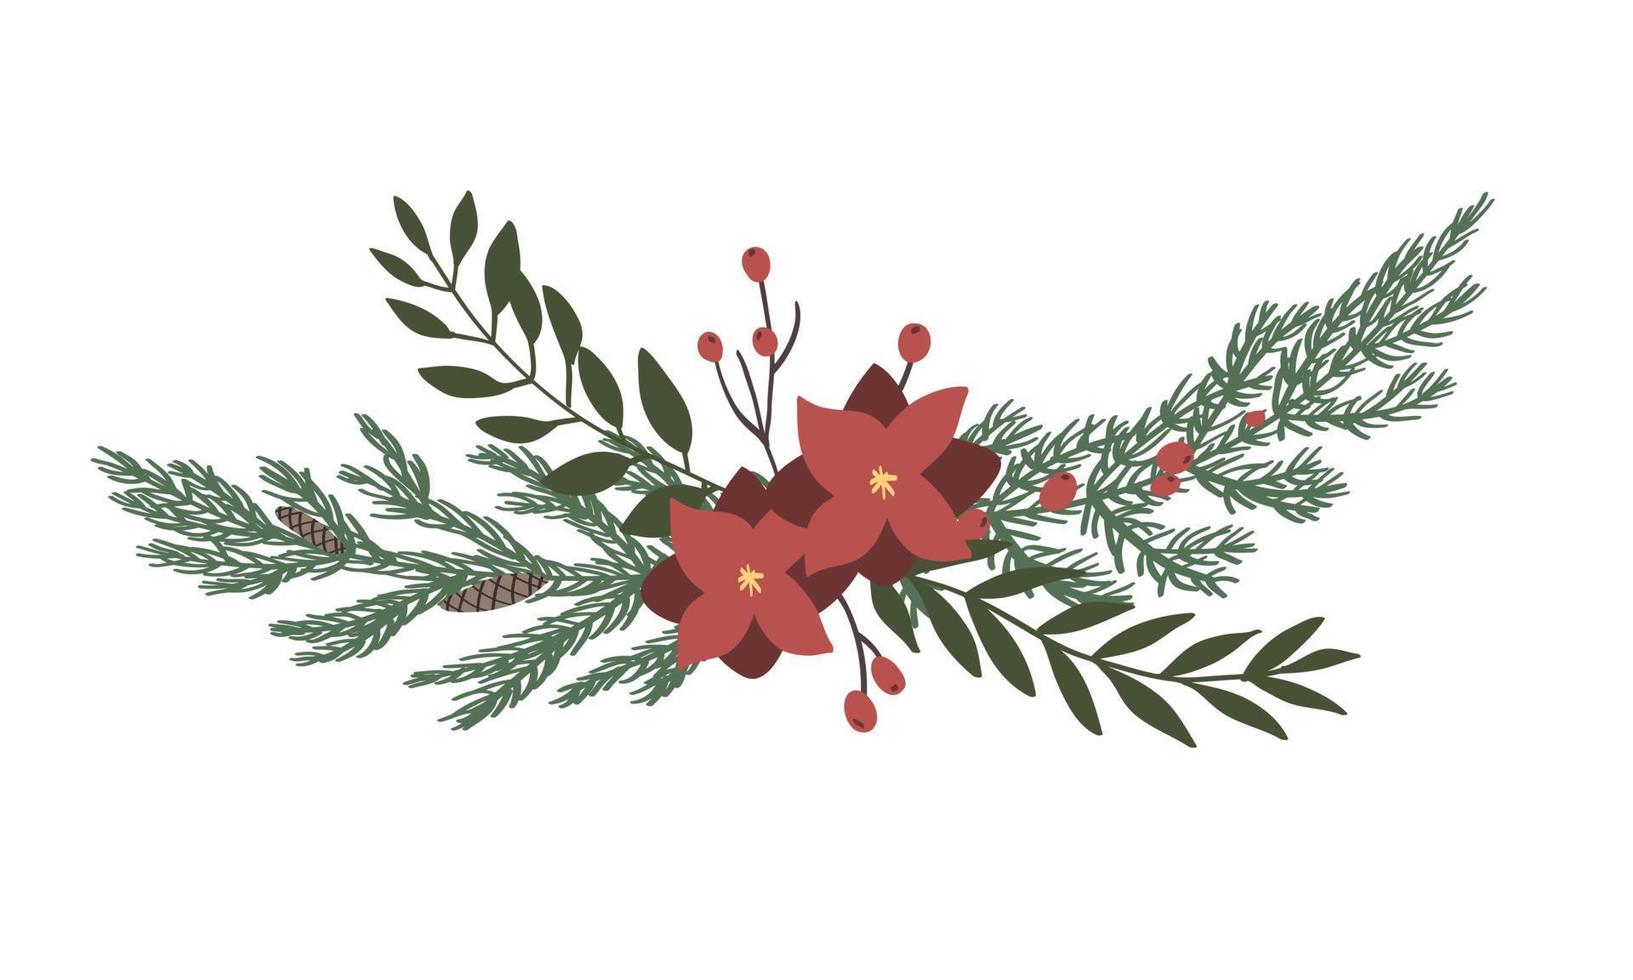 tallblad och blommor är handritade i kransar i en isolerad bakgrund. vektorelement för juldesigndekorationer vektor